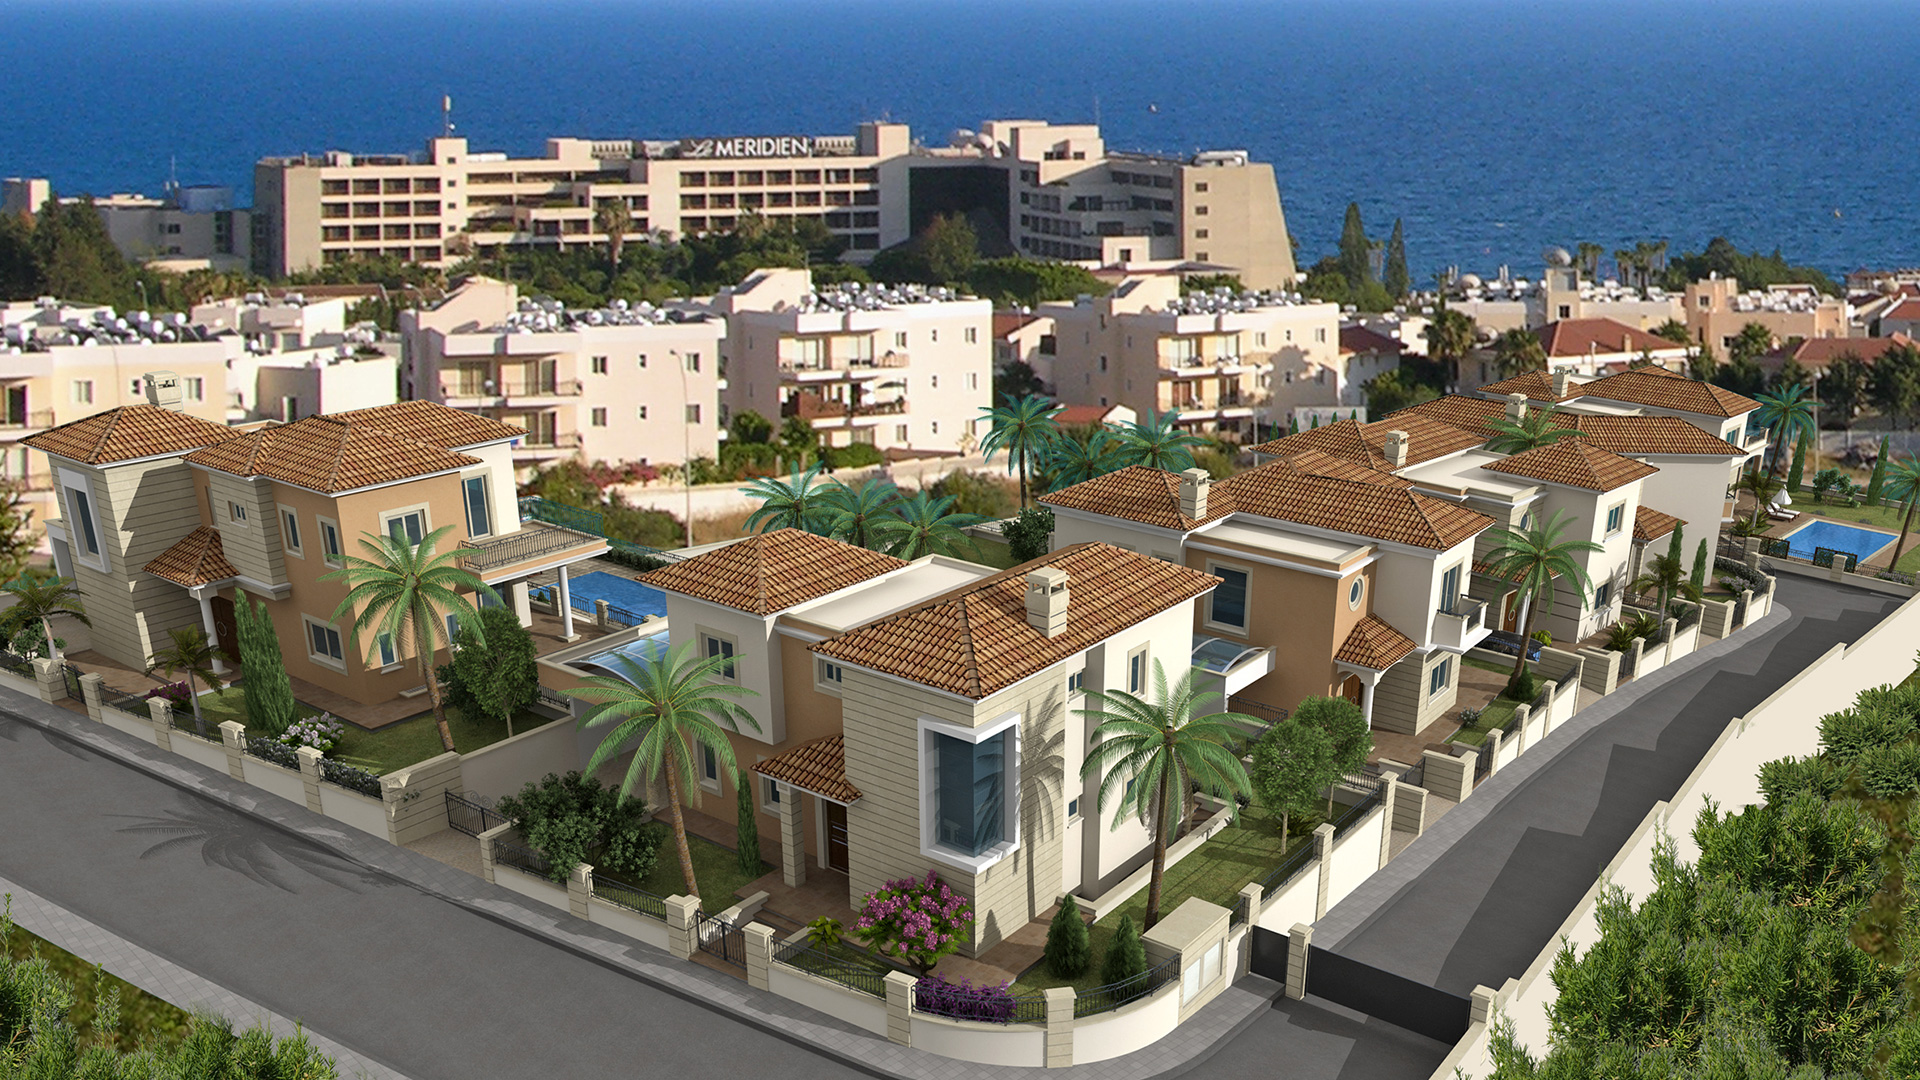 Elite-villas residential complex by chr.athanasiou developments ltd